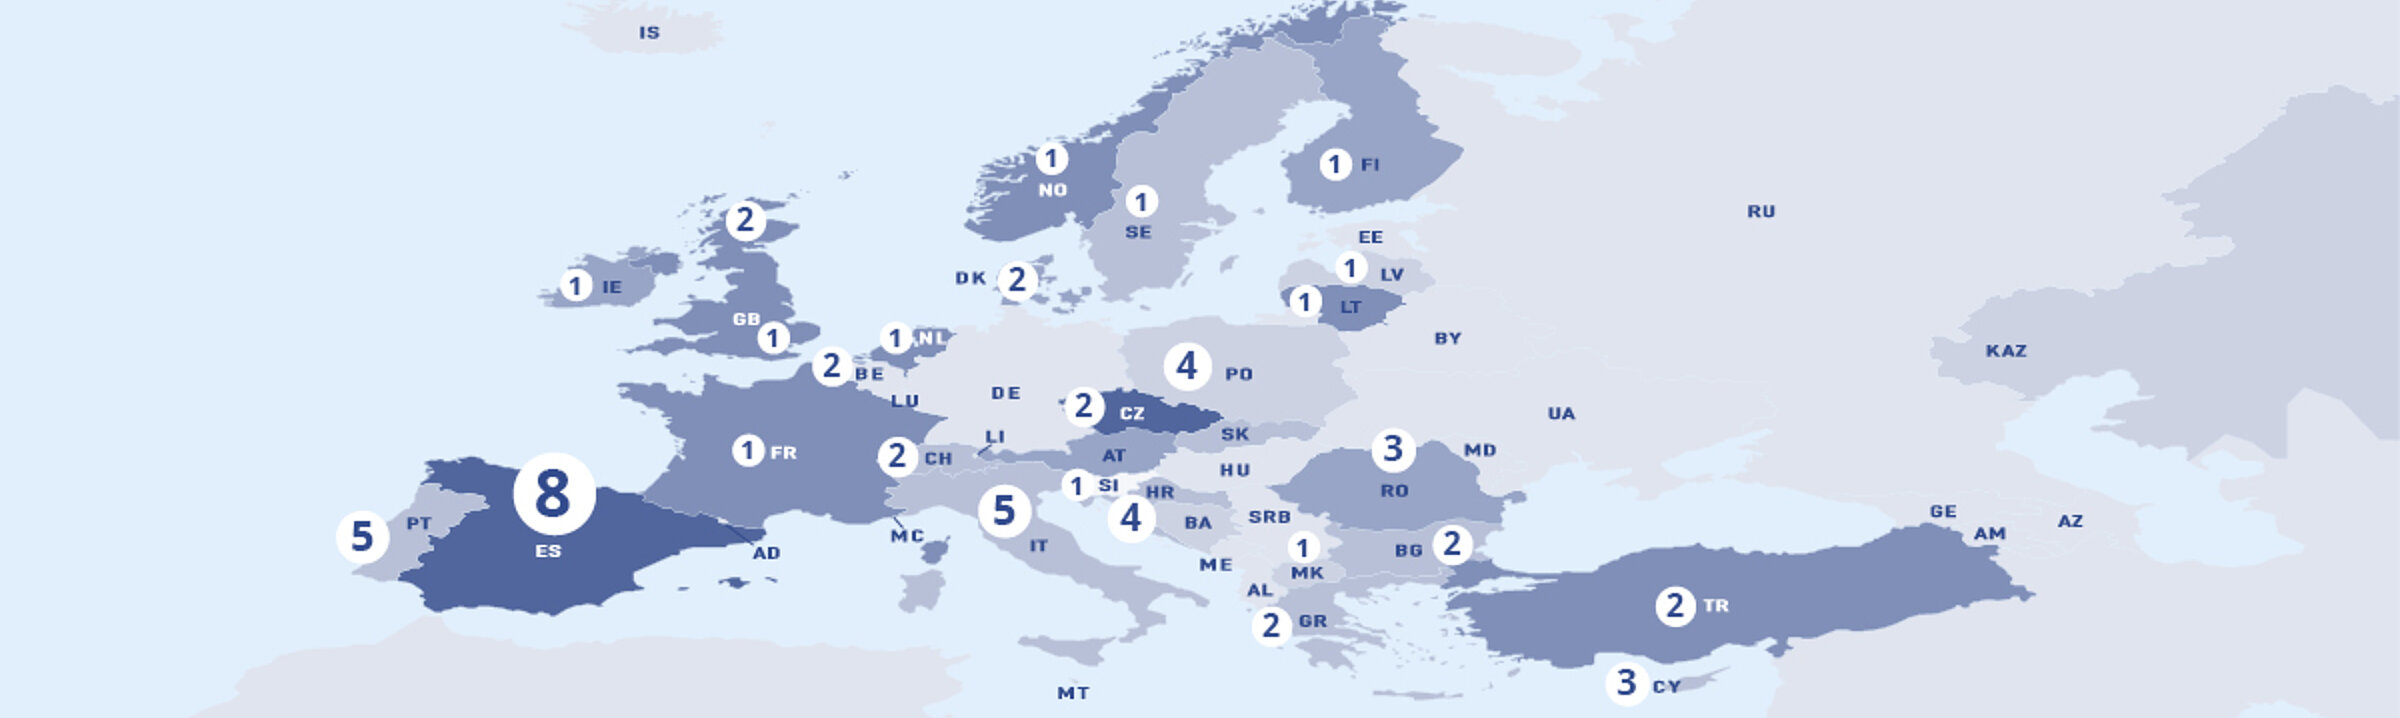 Europakarte mit Übersicht internationaler Projekte